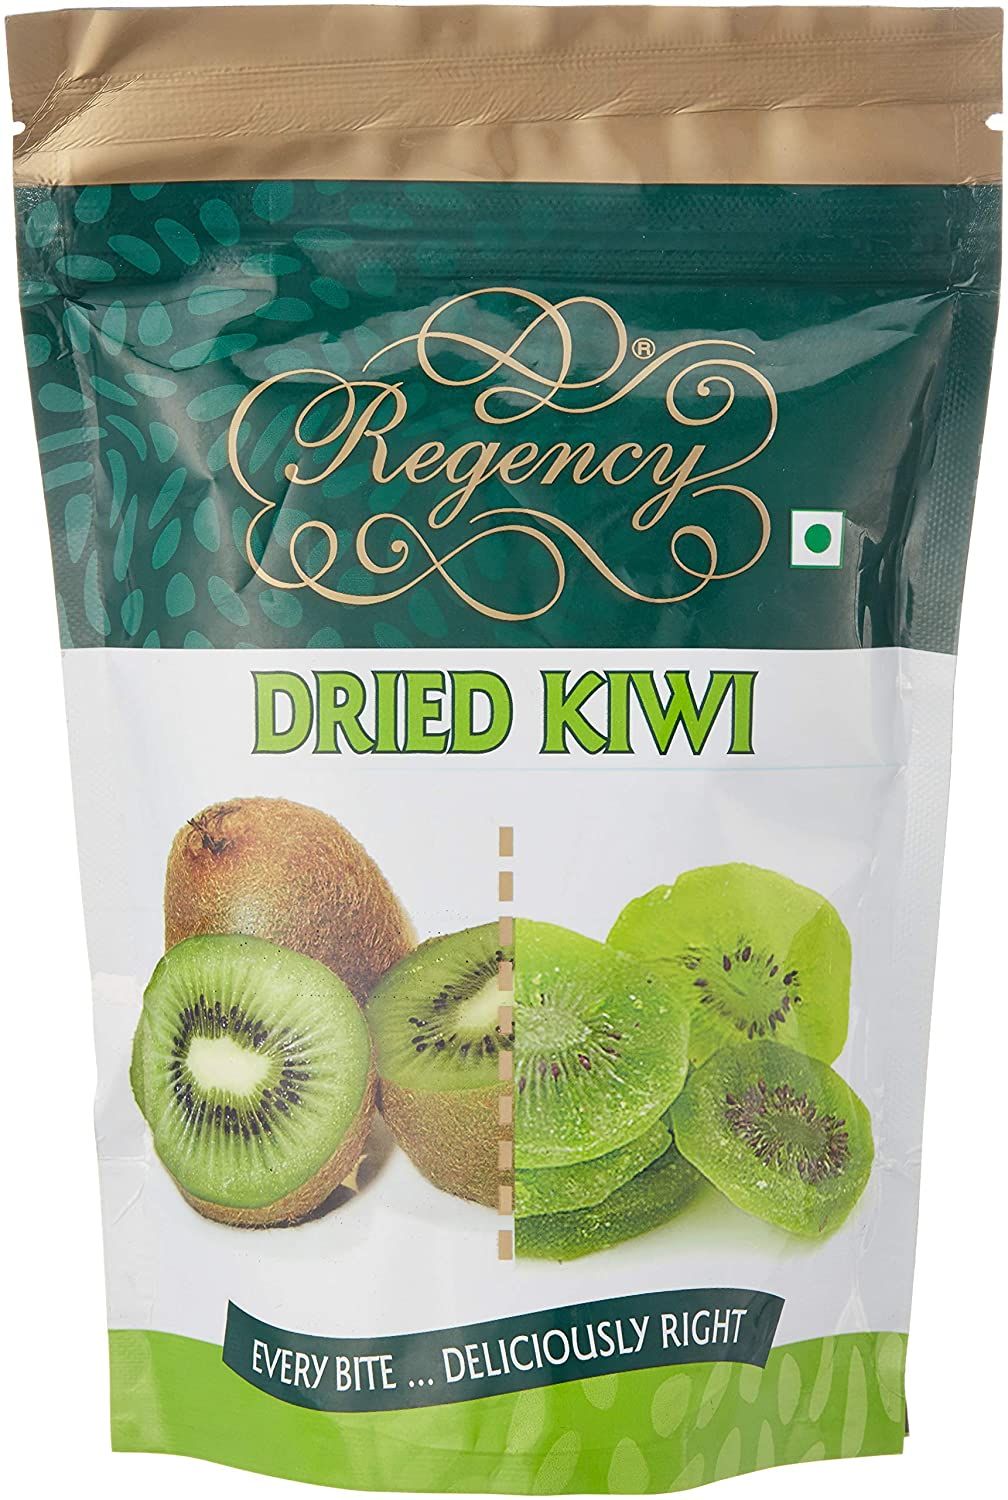 Regency Dried Kiwi Image